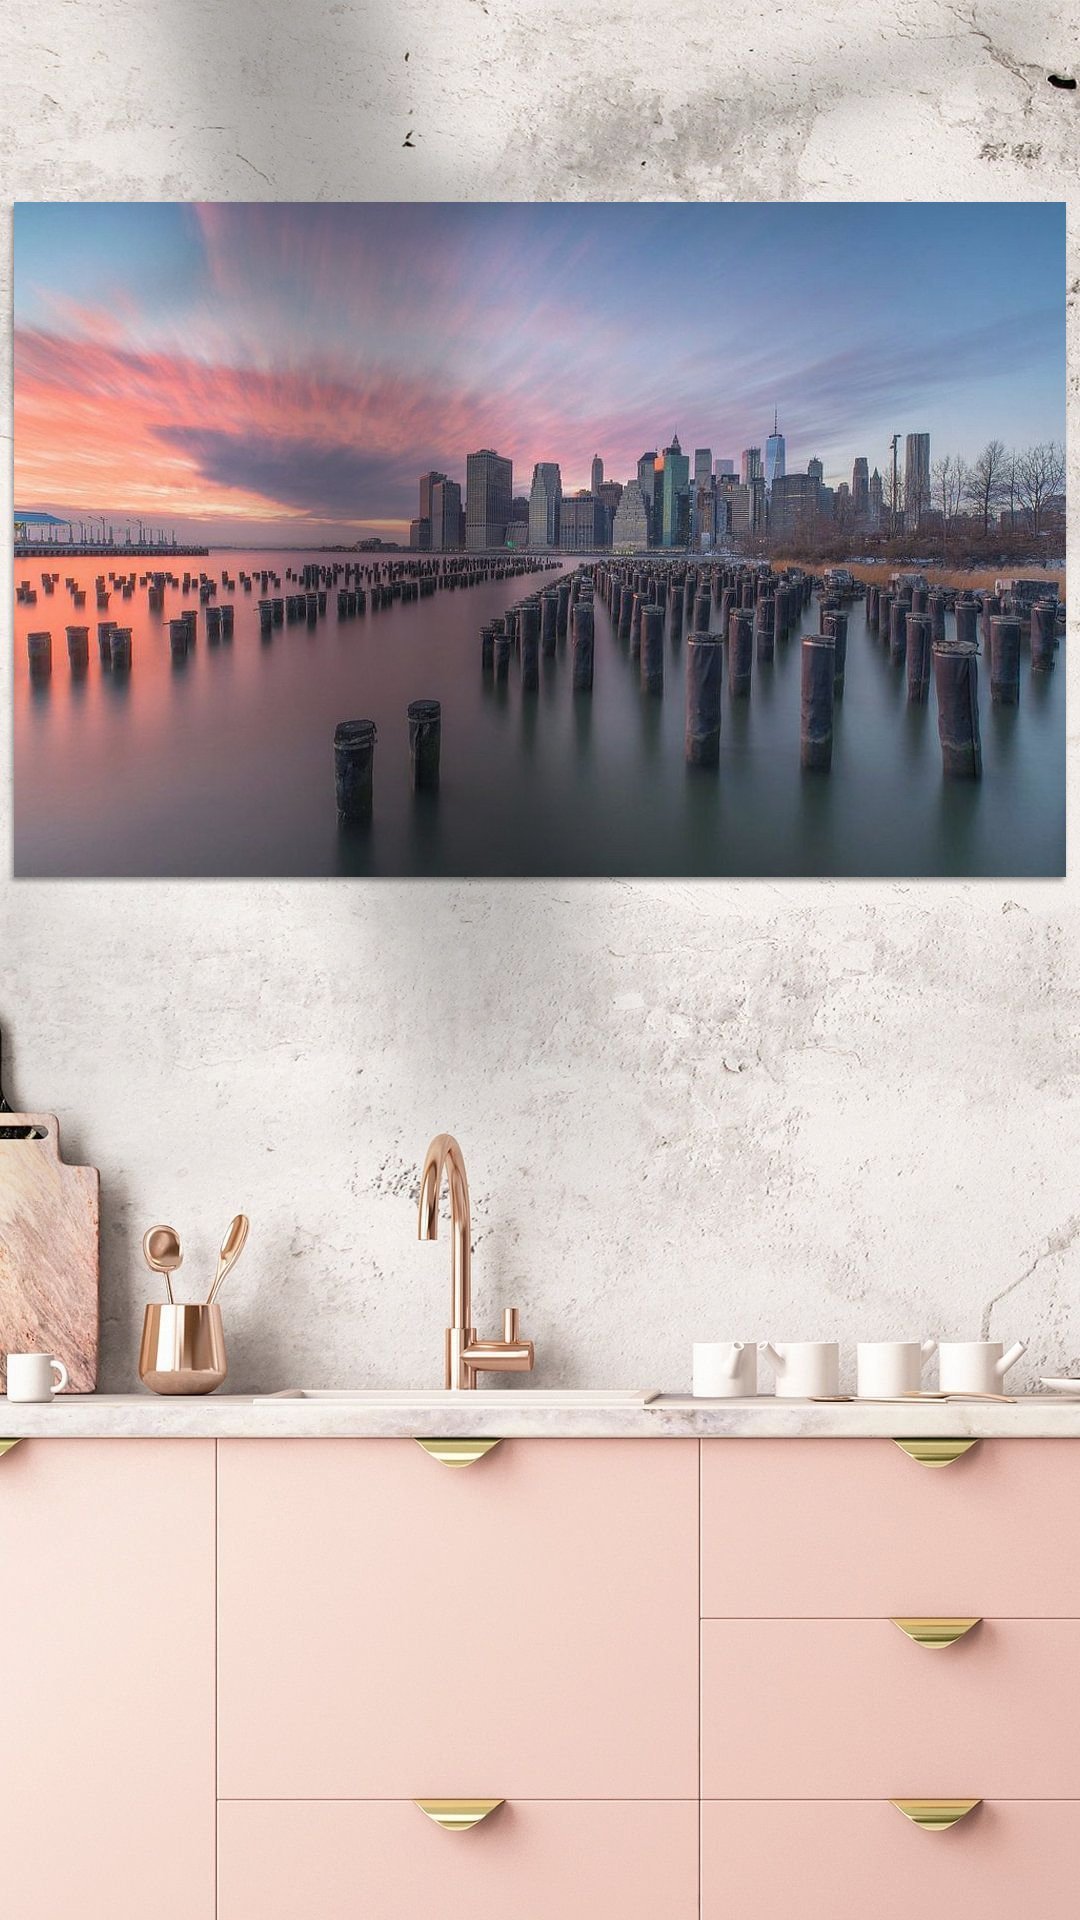 Werk aan de Muur-369824-Zonsondergang skyline New York City-Marcel Kerdijk-1080x1920-Roze keuken-facebookStory.jpg